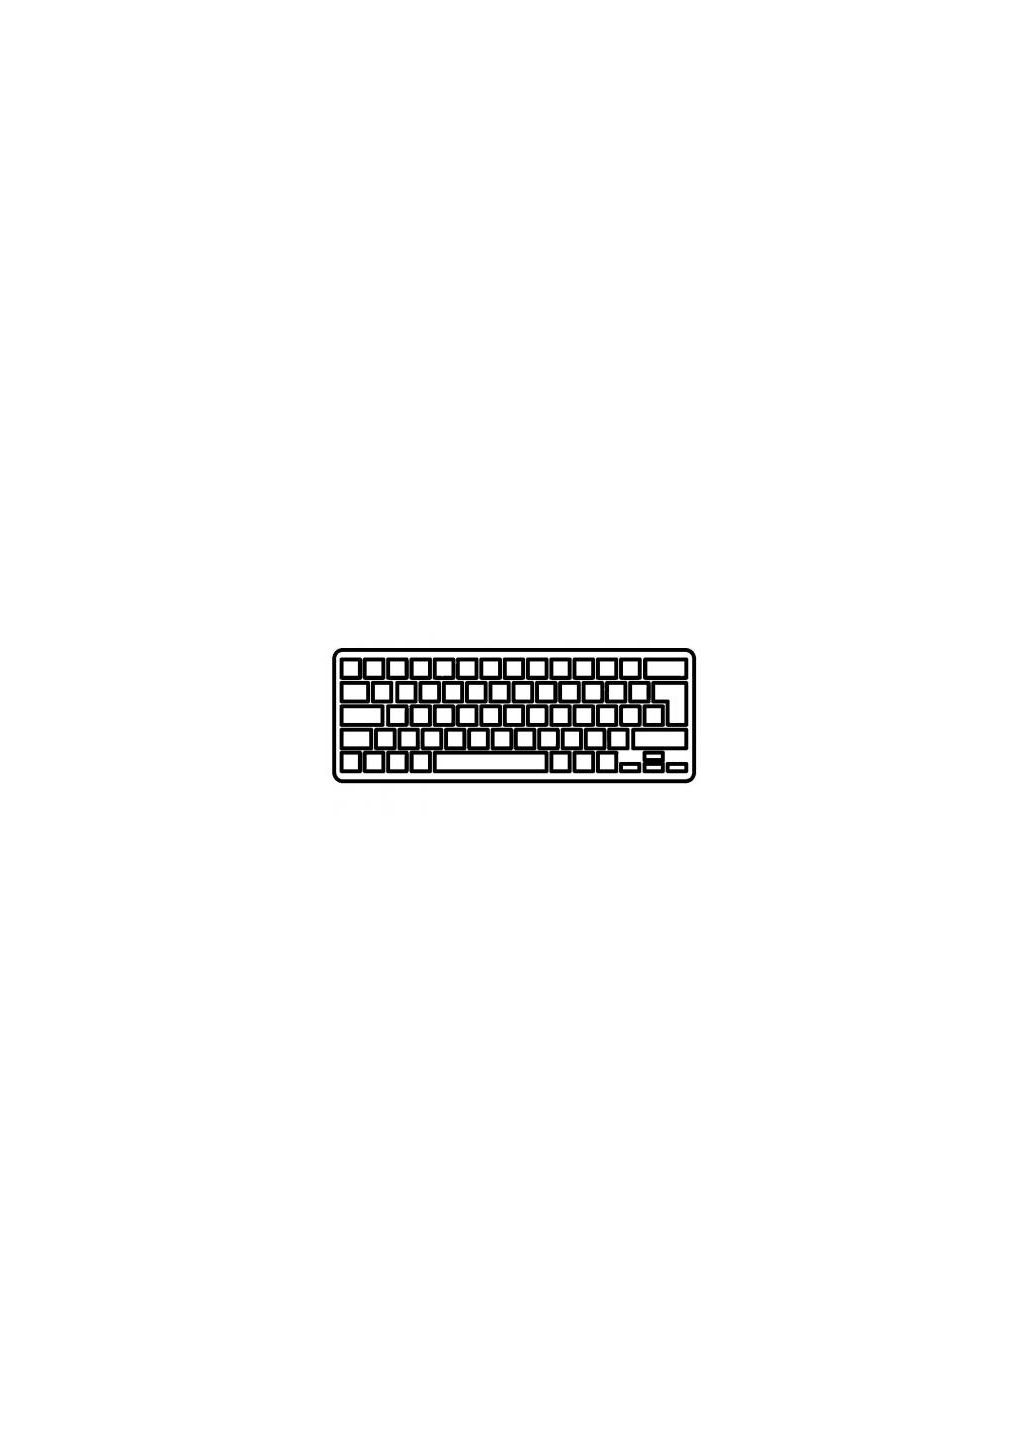 Клавиатура ноутбука 900X3K черн. без рамки UA/RU/US (A43030) Samsung 900x3k черн.без рамки ua/ru/us (276706838)